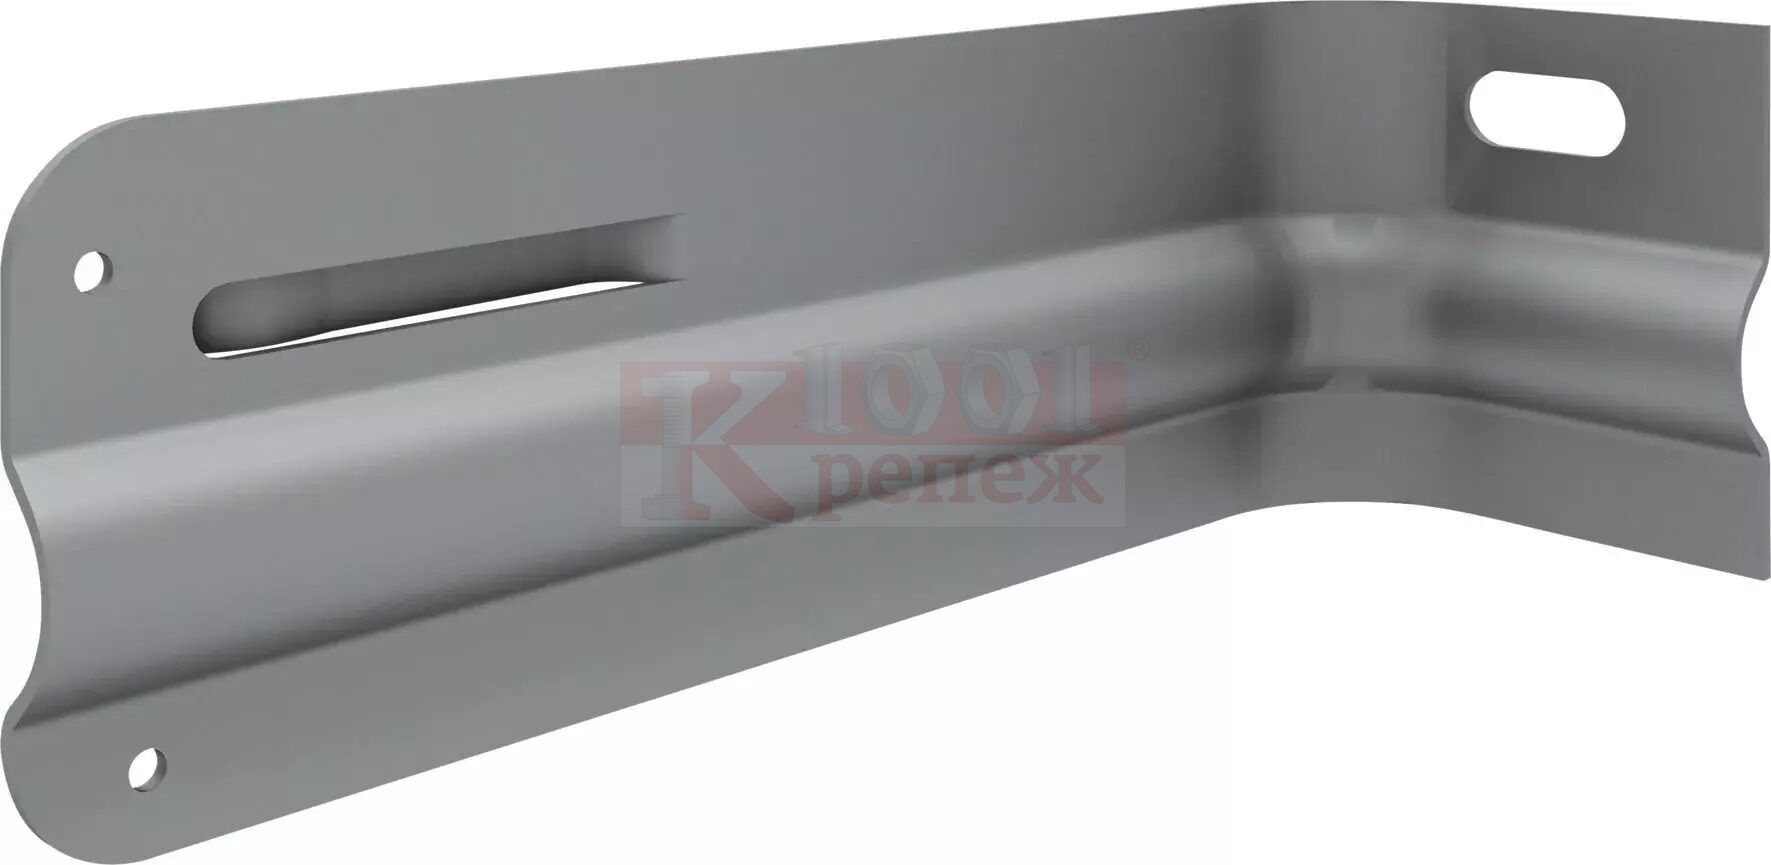 MFT-GS S Кронштейн HILTI с полимерным покрытием для фасадных систем оц. сталь, 72x75x220 мм